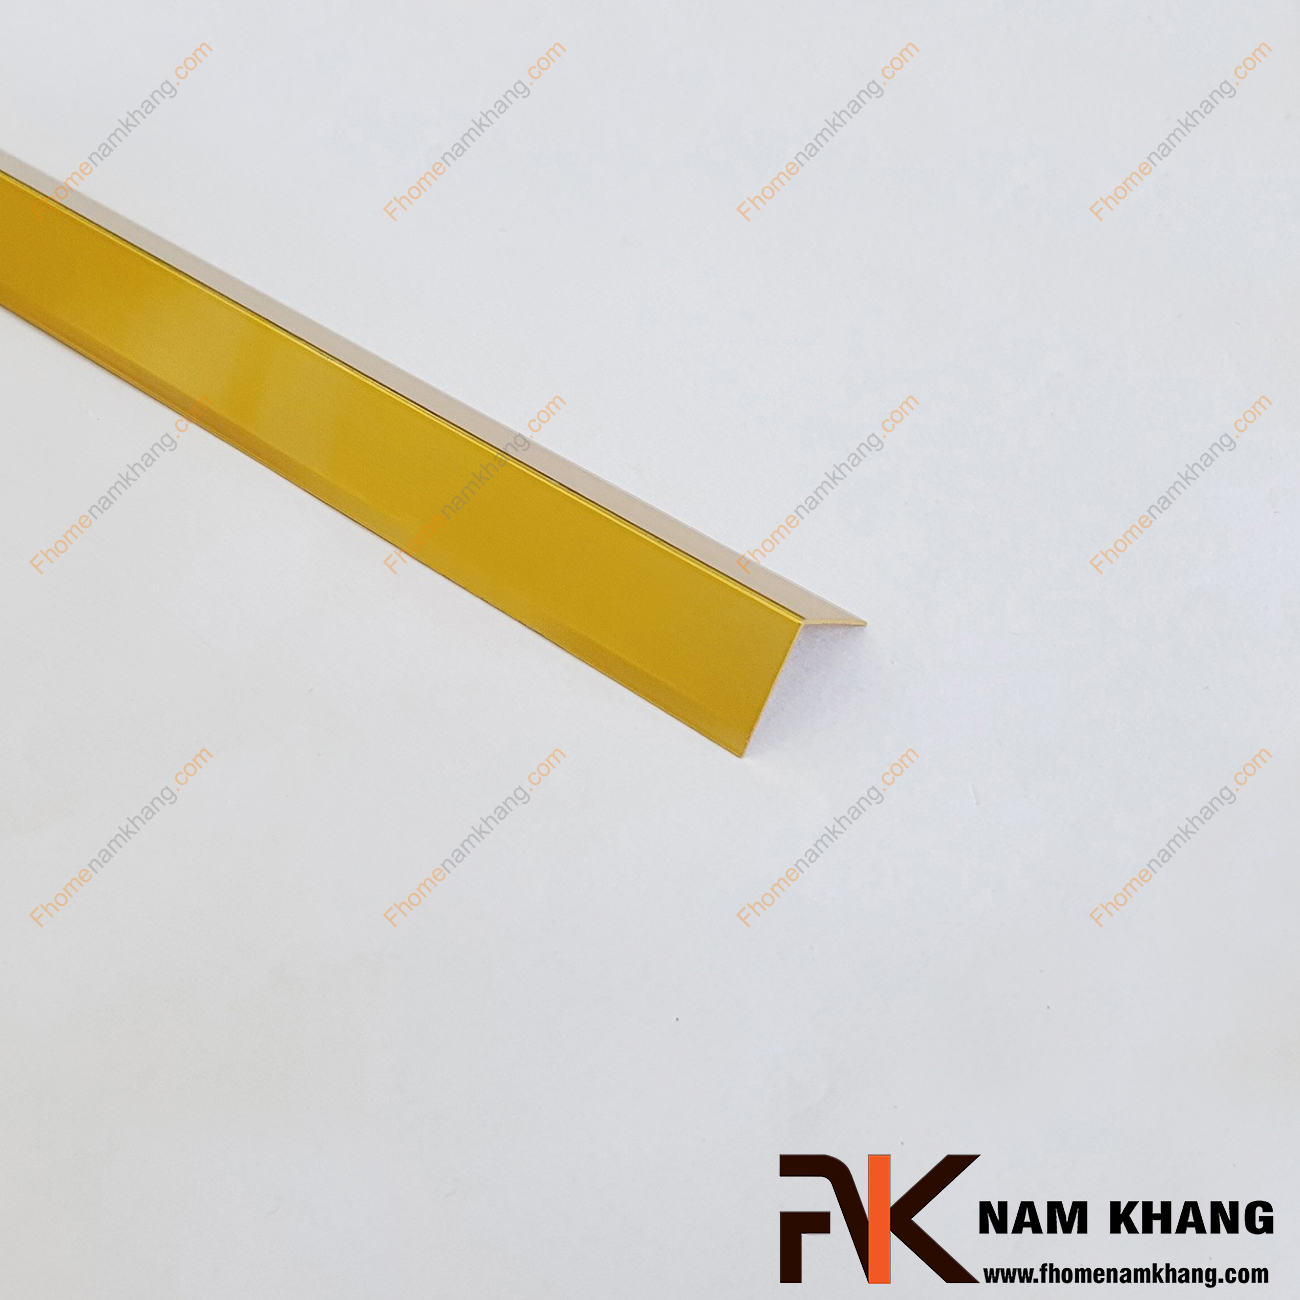 Nẹp chữ V trang trí cạnh gỗ màu vàng bóng NKG-NVV là sản phẩm thường được sử dụng nẹp ở vị trí tiếp xúc giữa 2 bề mặt tấm gỗ.